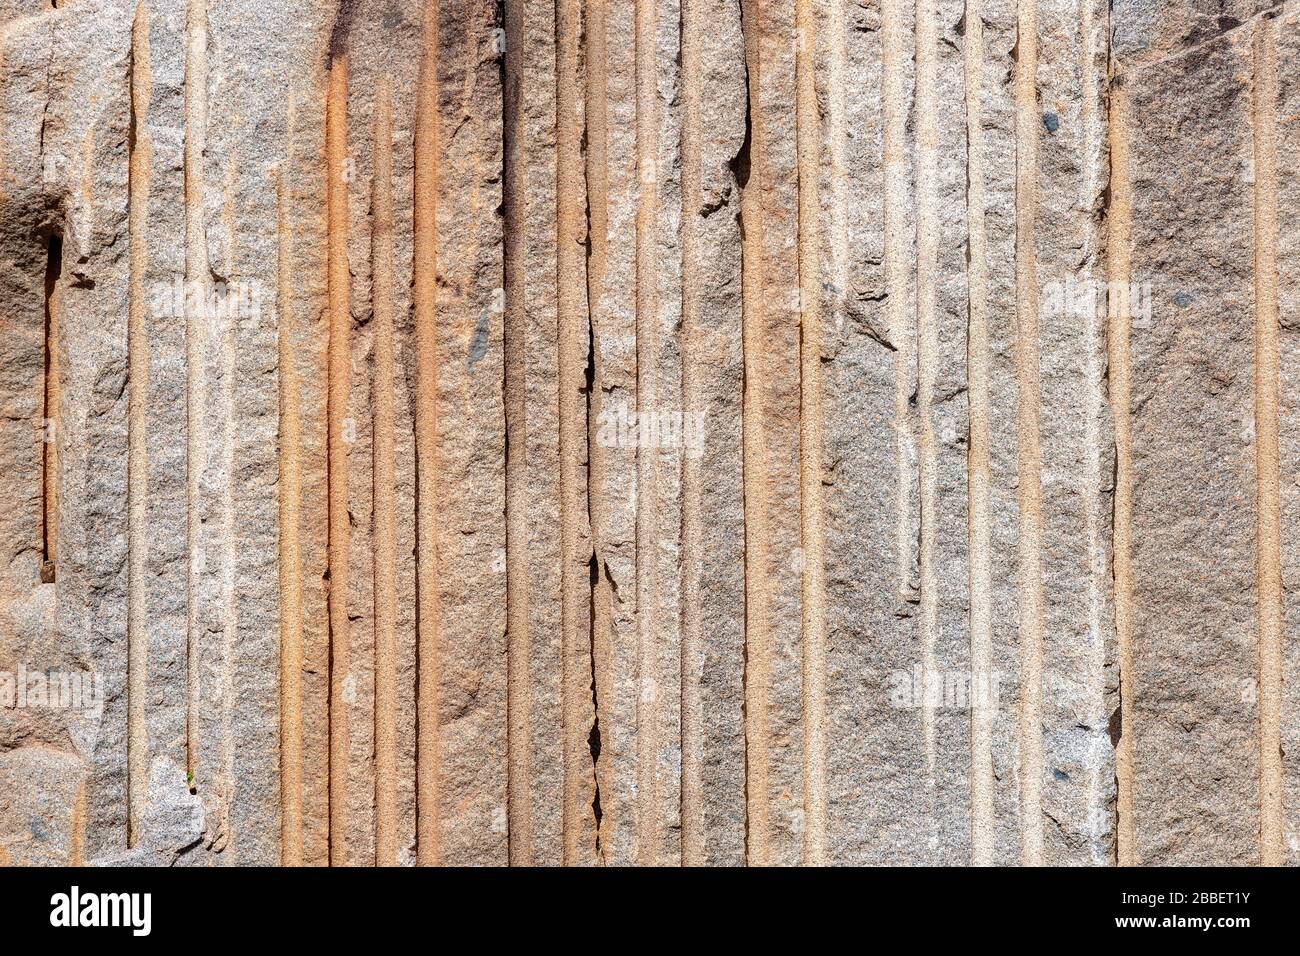 Une série de lignes verticales dans une falaise dans une carrière de roche. Les lignes ont été formées par des foreuses utilisées pour séparer le visage de la roche de la falaise. Soleil brillant Banque D'Images